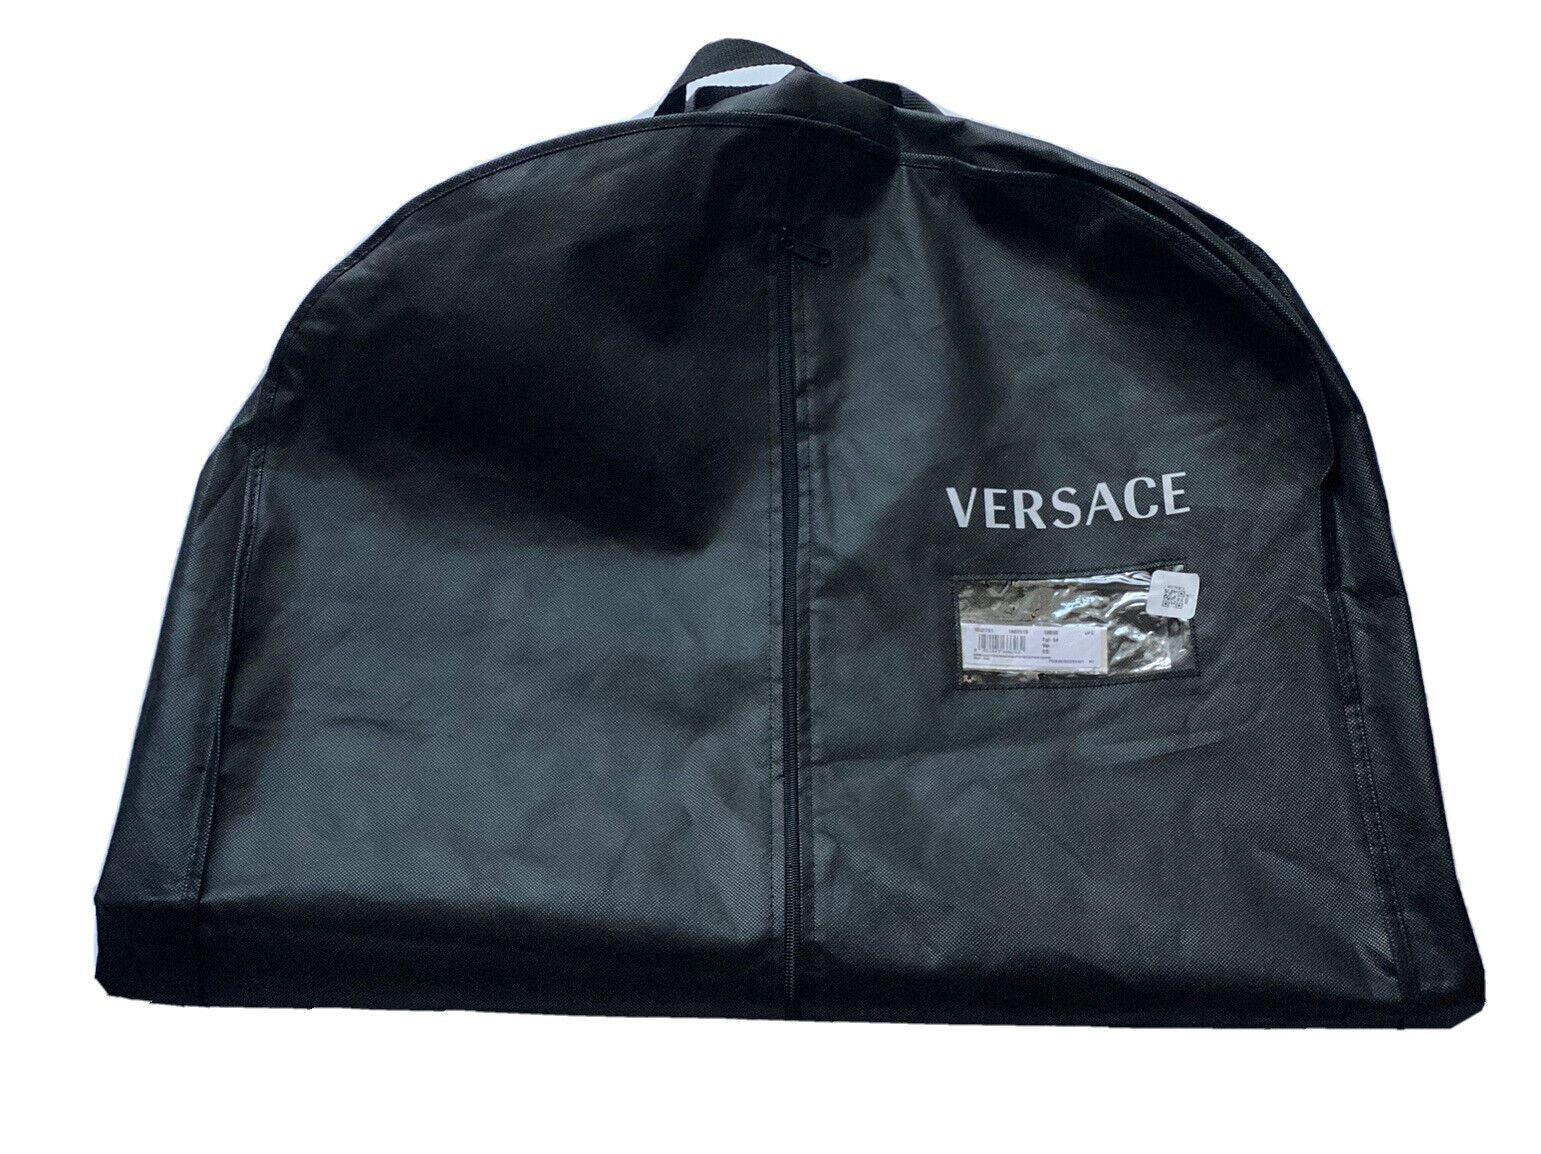 Brandneuer, faltbarer Kleidersack für Jacke/Weste von Versace, Schwarz, 43 Zoll L x 23,5 Zoll B 1002751 